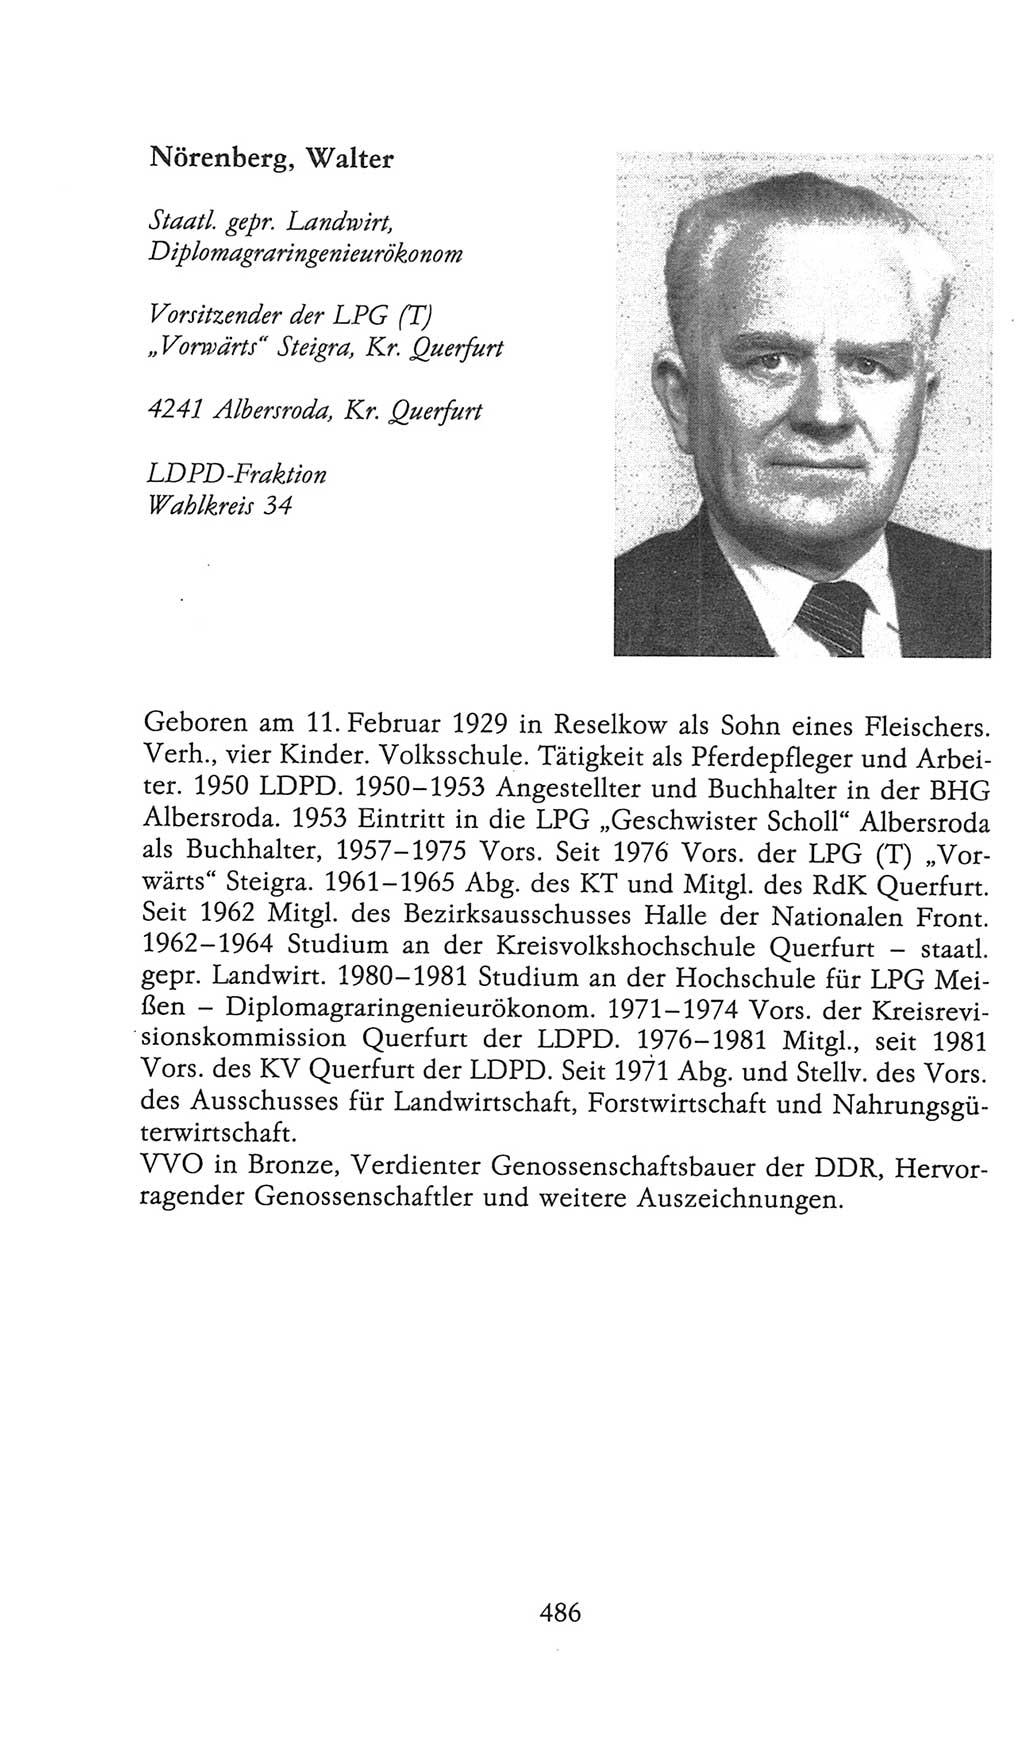 Volkskammer (VK) der Deutschen Demokratischen Republik (DDR), 9. Wahlperiode 1986-1990, Seite 486 (VK. DDR 9. WP. 1986-1990, S. 486)